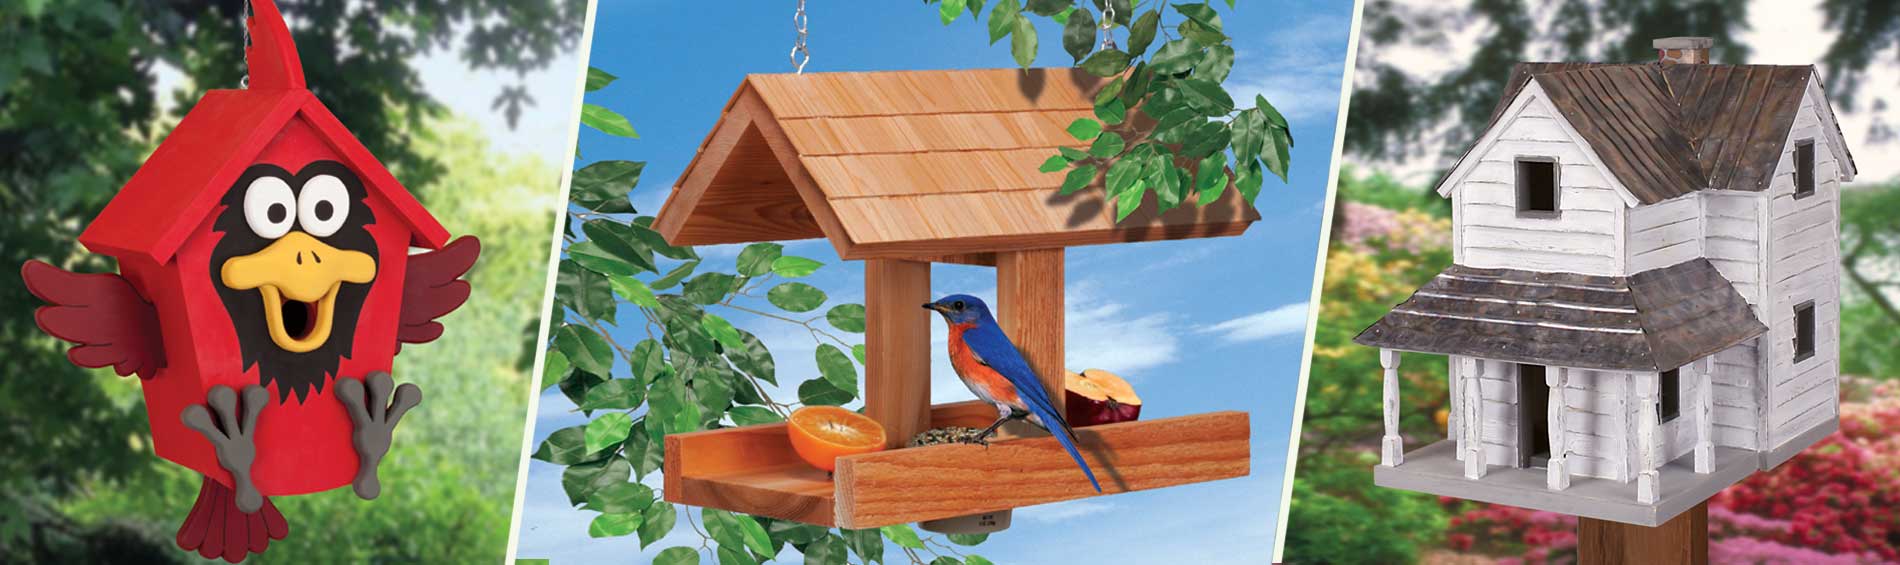 Bird Feeder and House